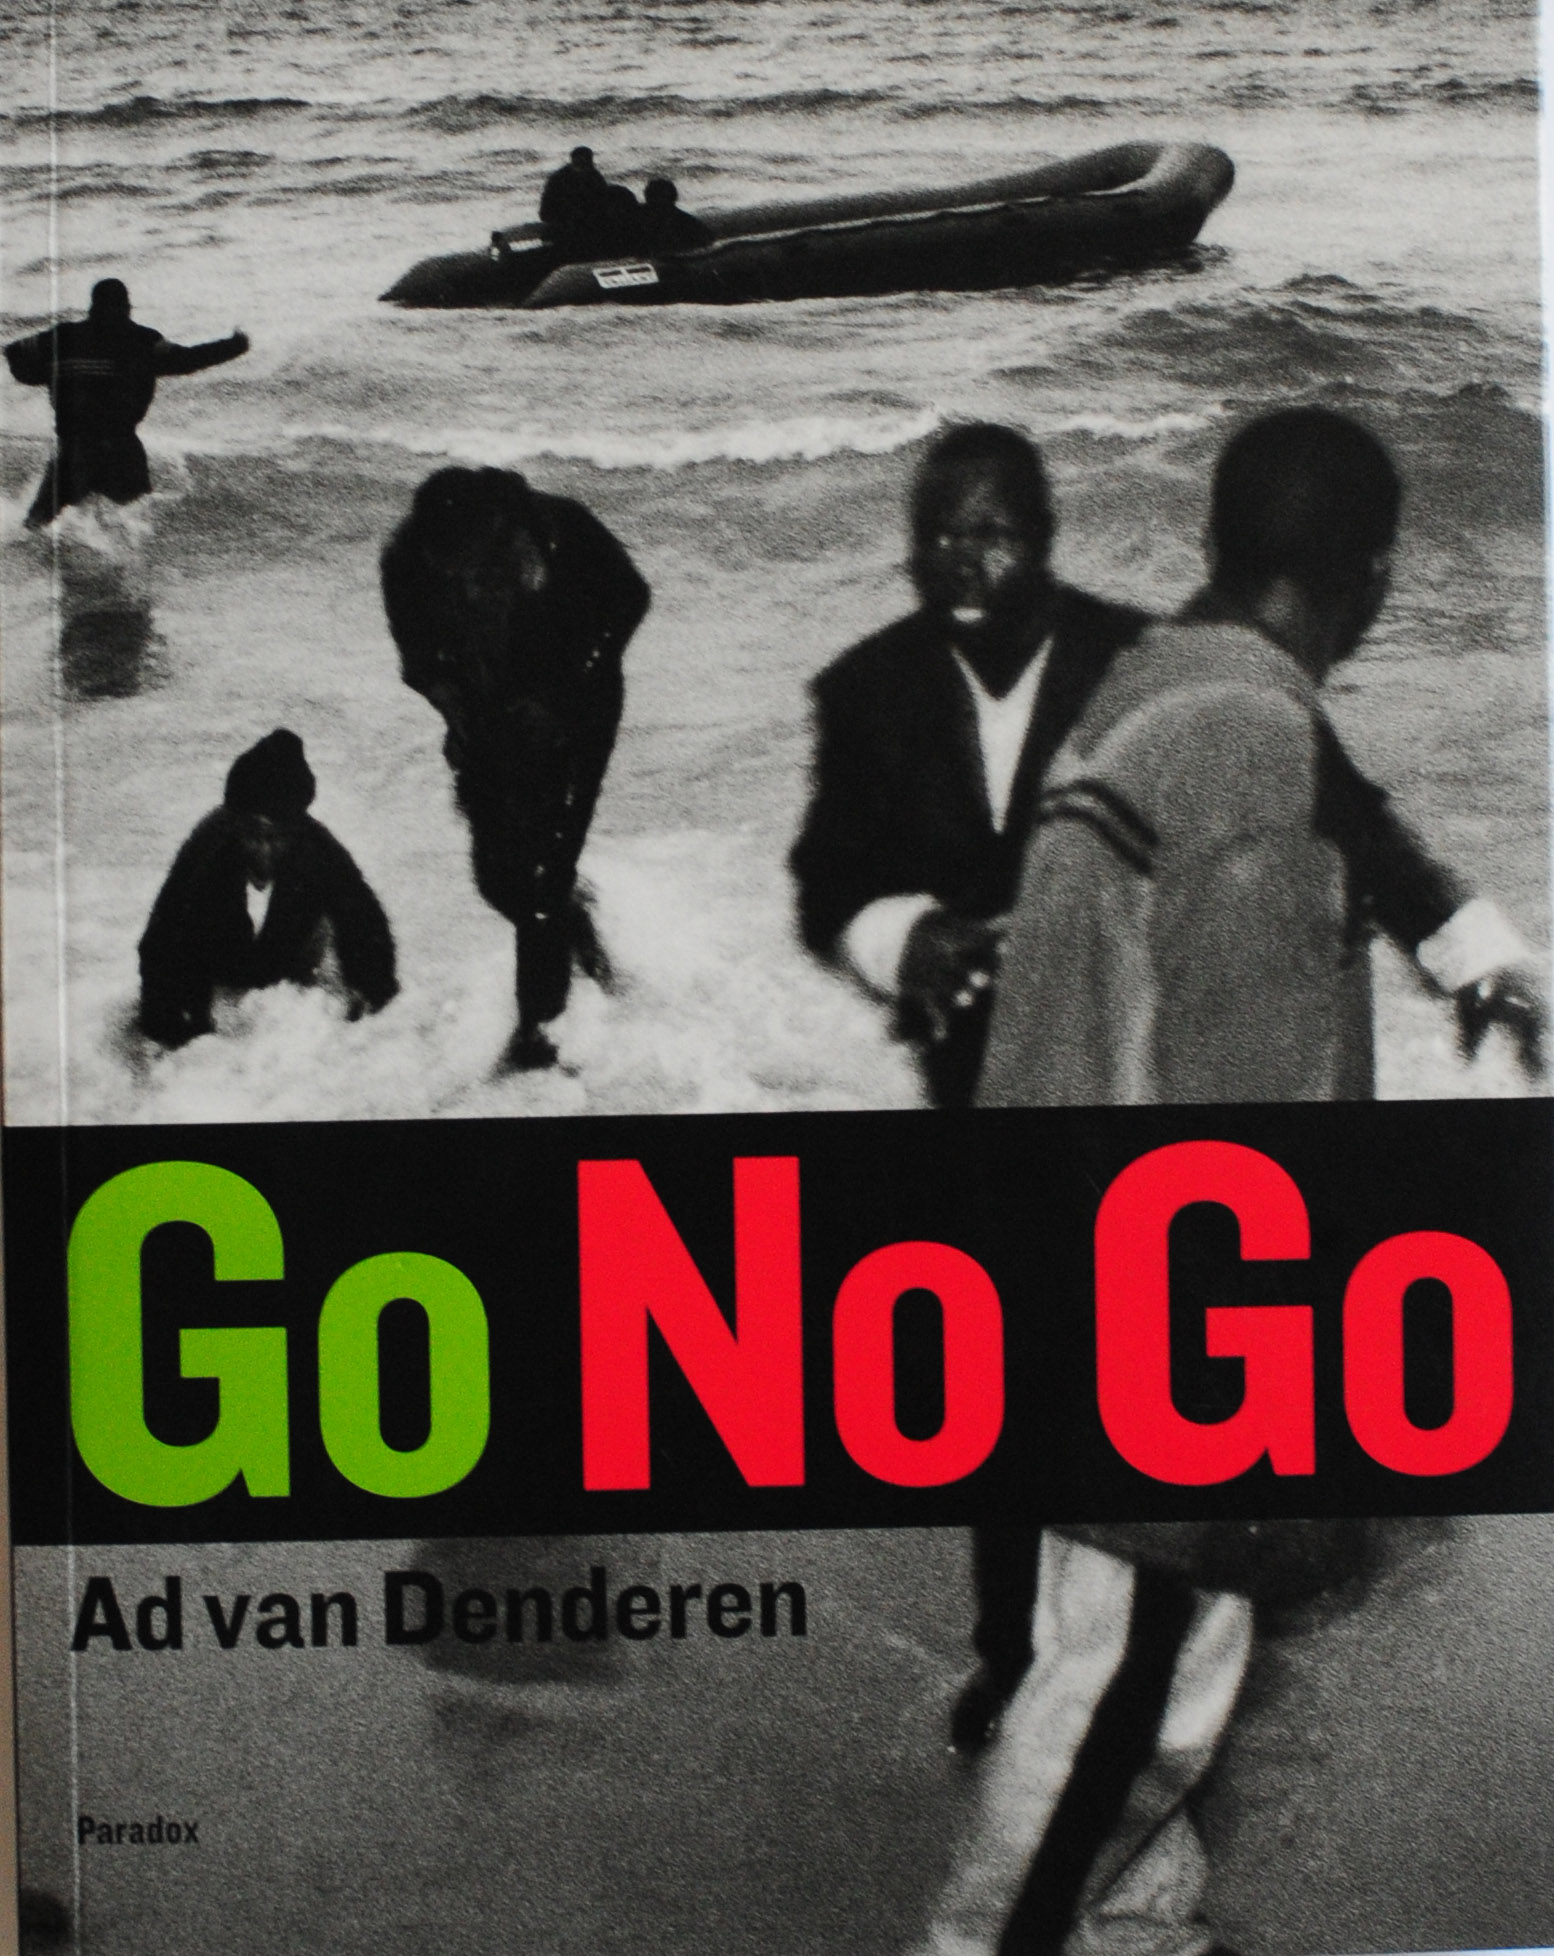 Go No Go Ad van Denderen